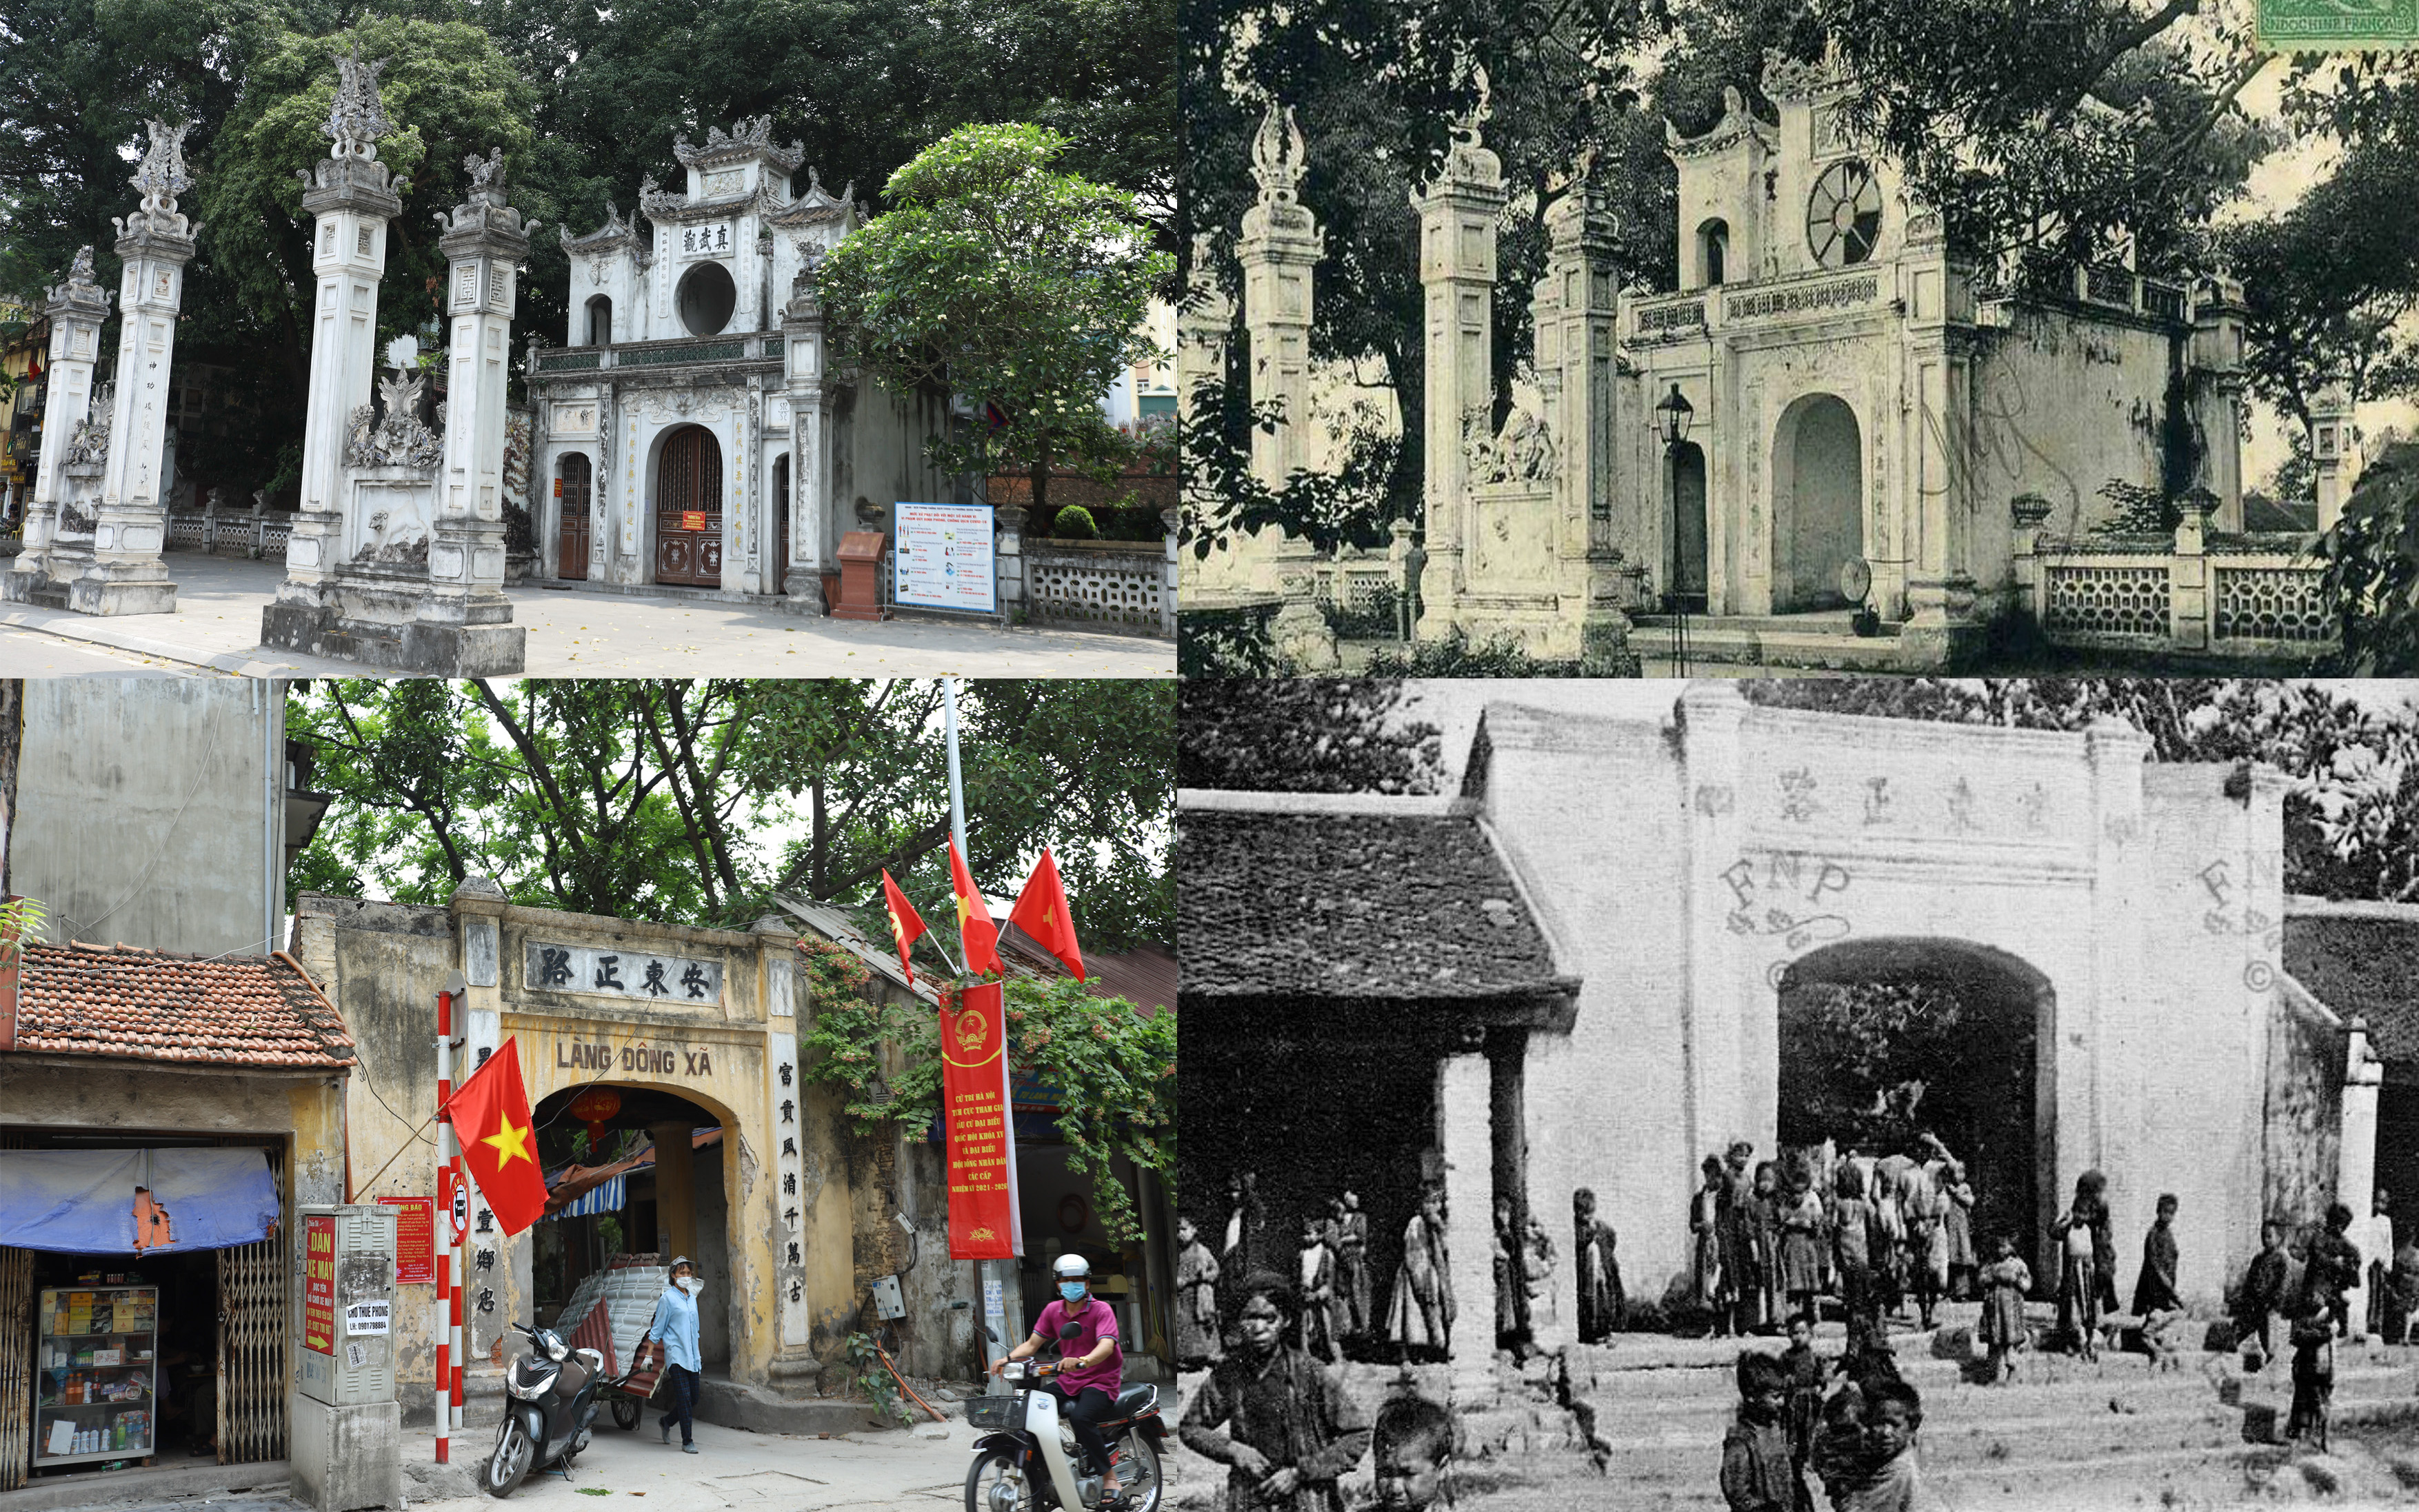 Ảnh: Những góc phố, công trình ở Hà Nội thay đổi như thế nào sau 100 năm?